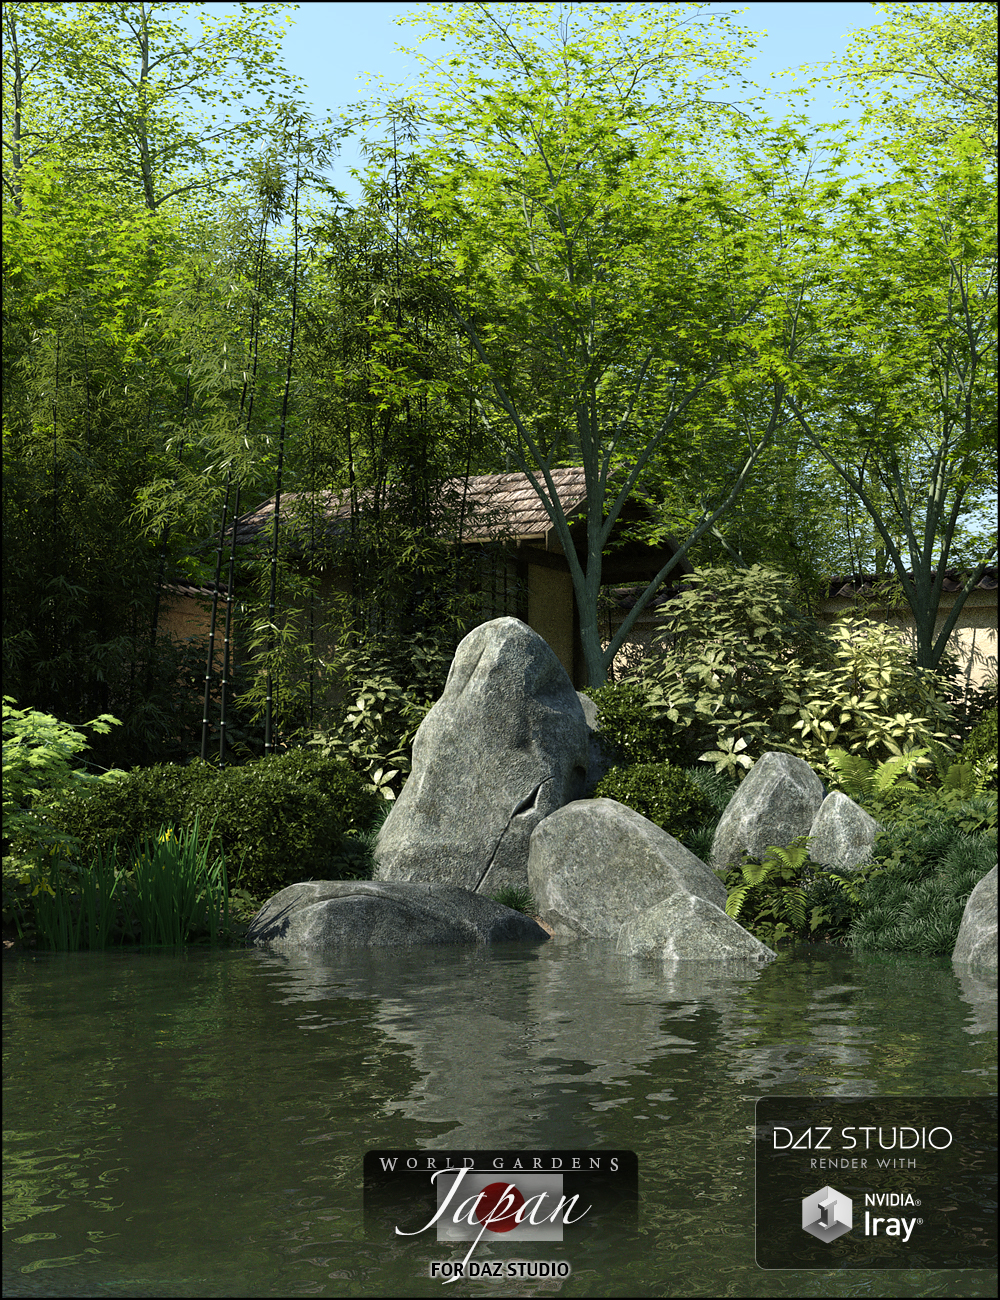 World Gardens Japan for Daz Studio by: HowieFarkes, 3D Models by Daz 3D